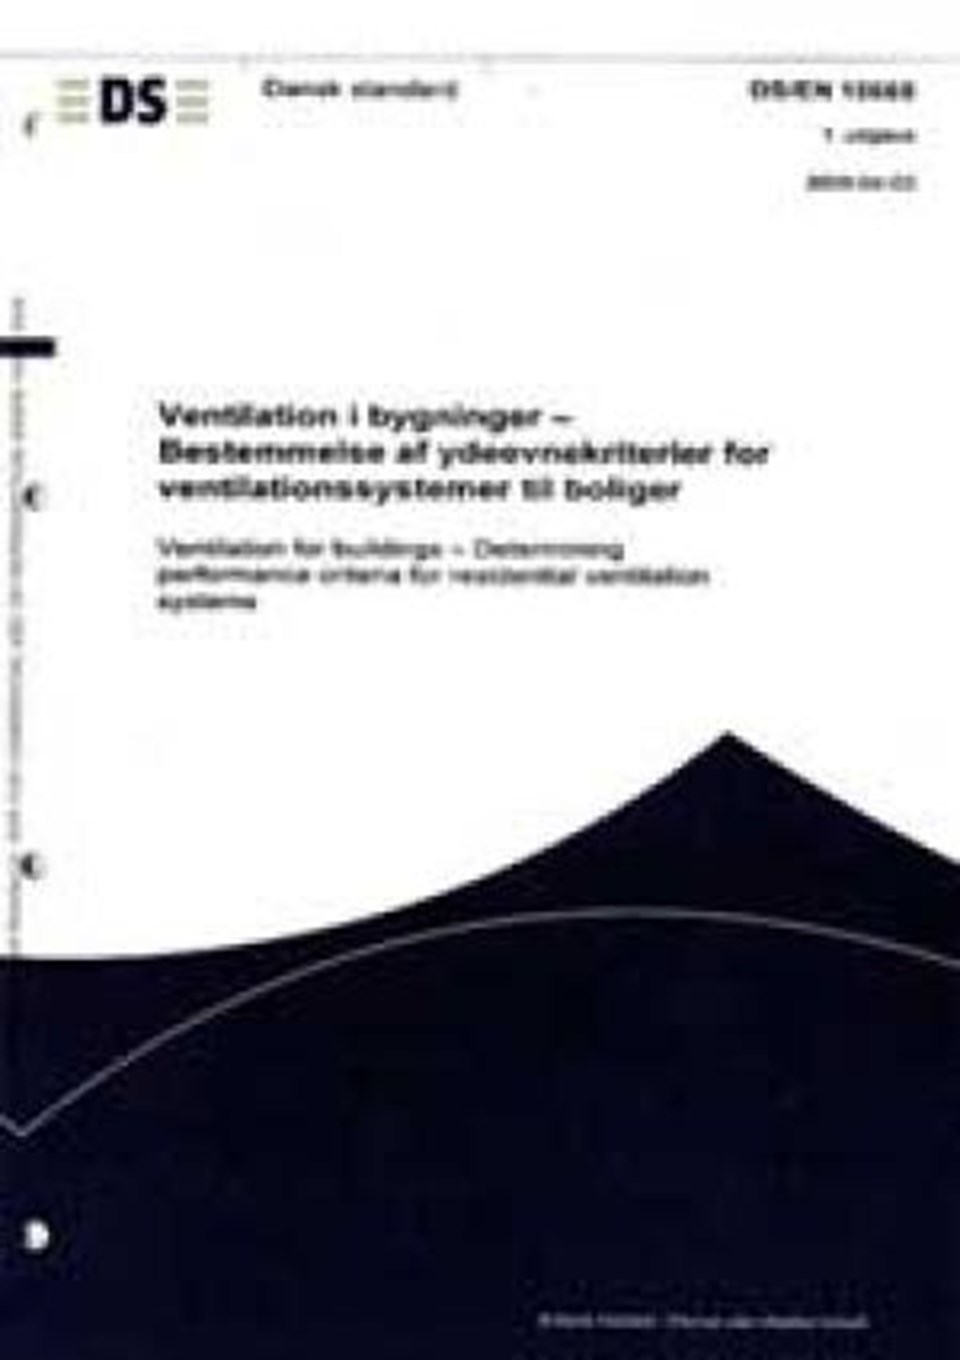 Ventilation i bygn.r - Best. af ydeevnekrite e-bog (1)